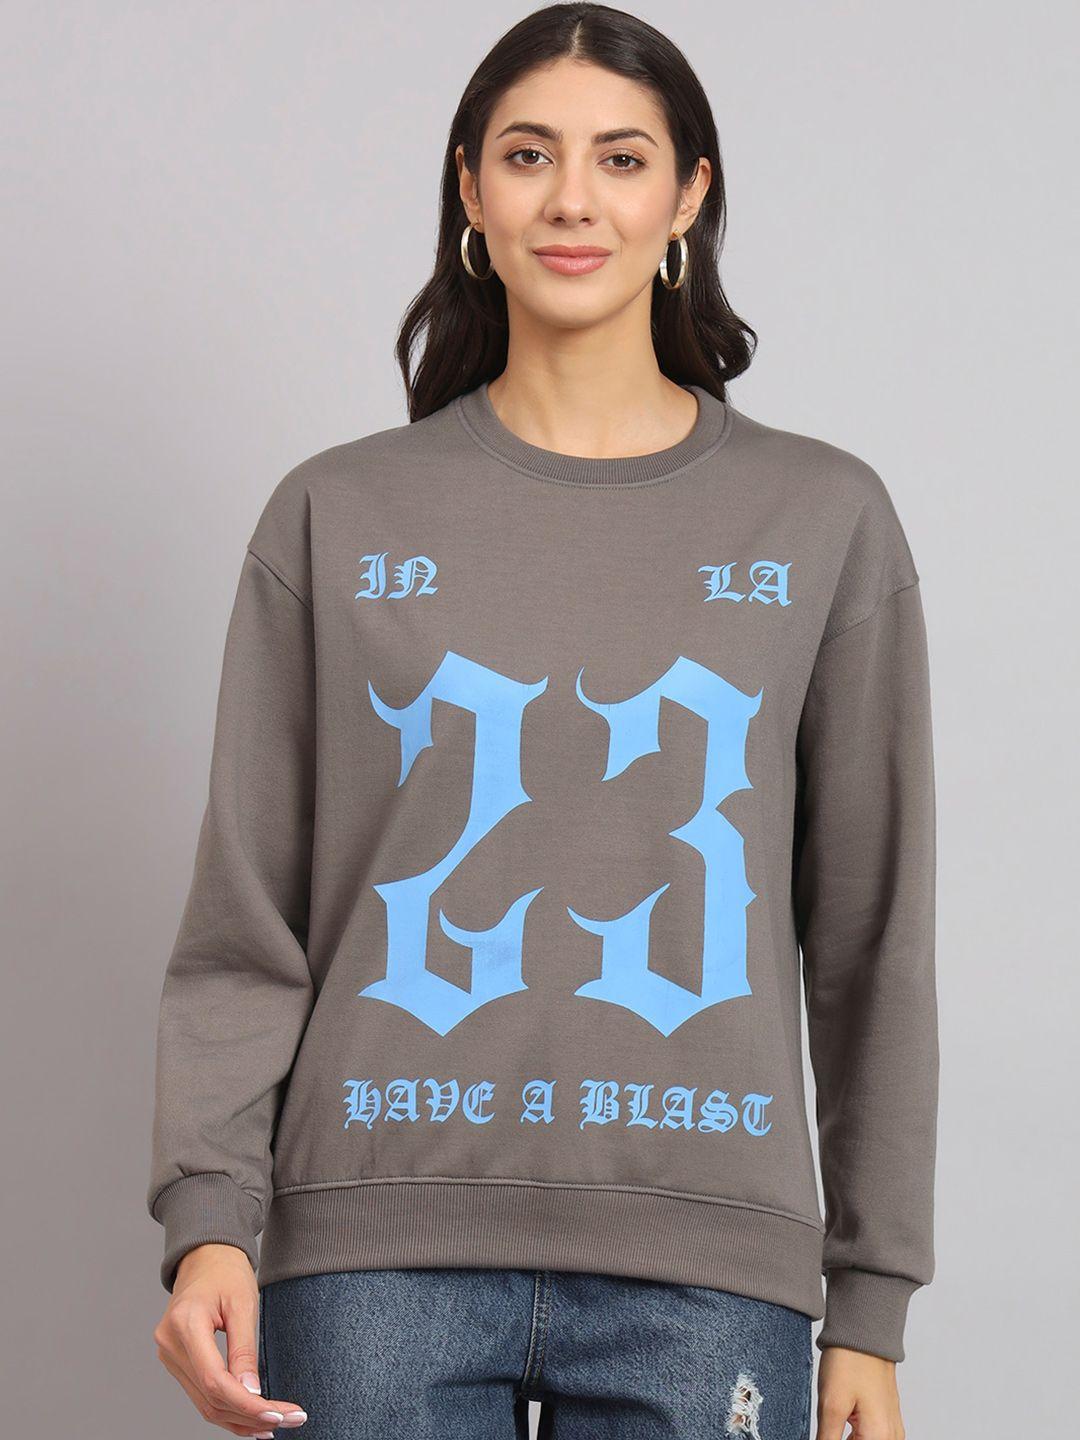 obaan alphanumeric printed cotton sweatshirt